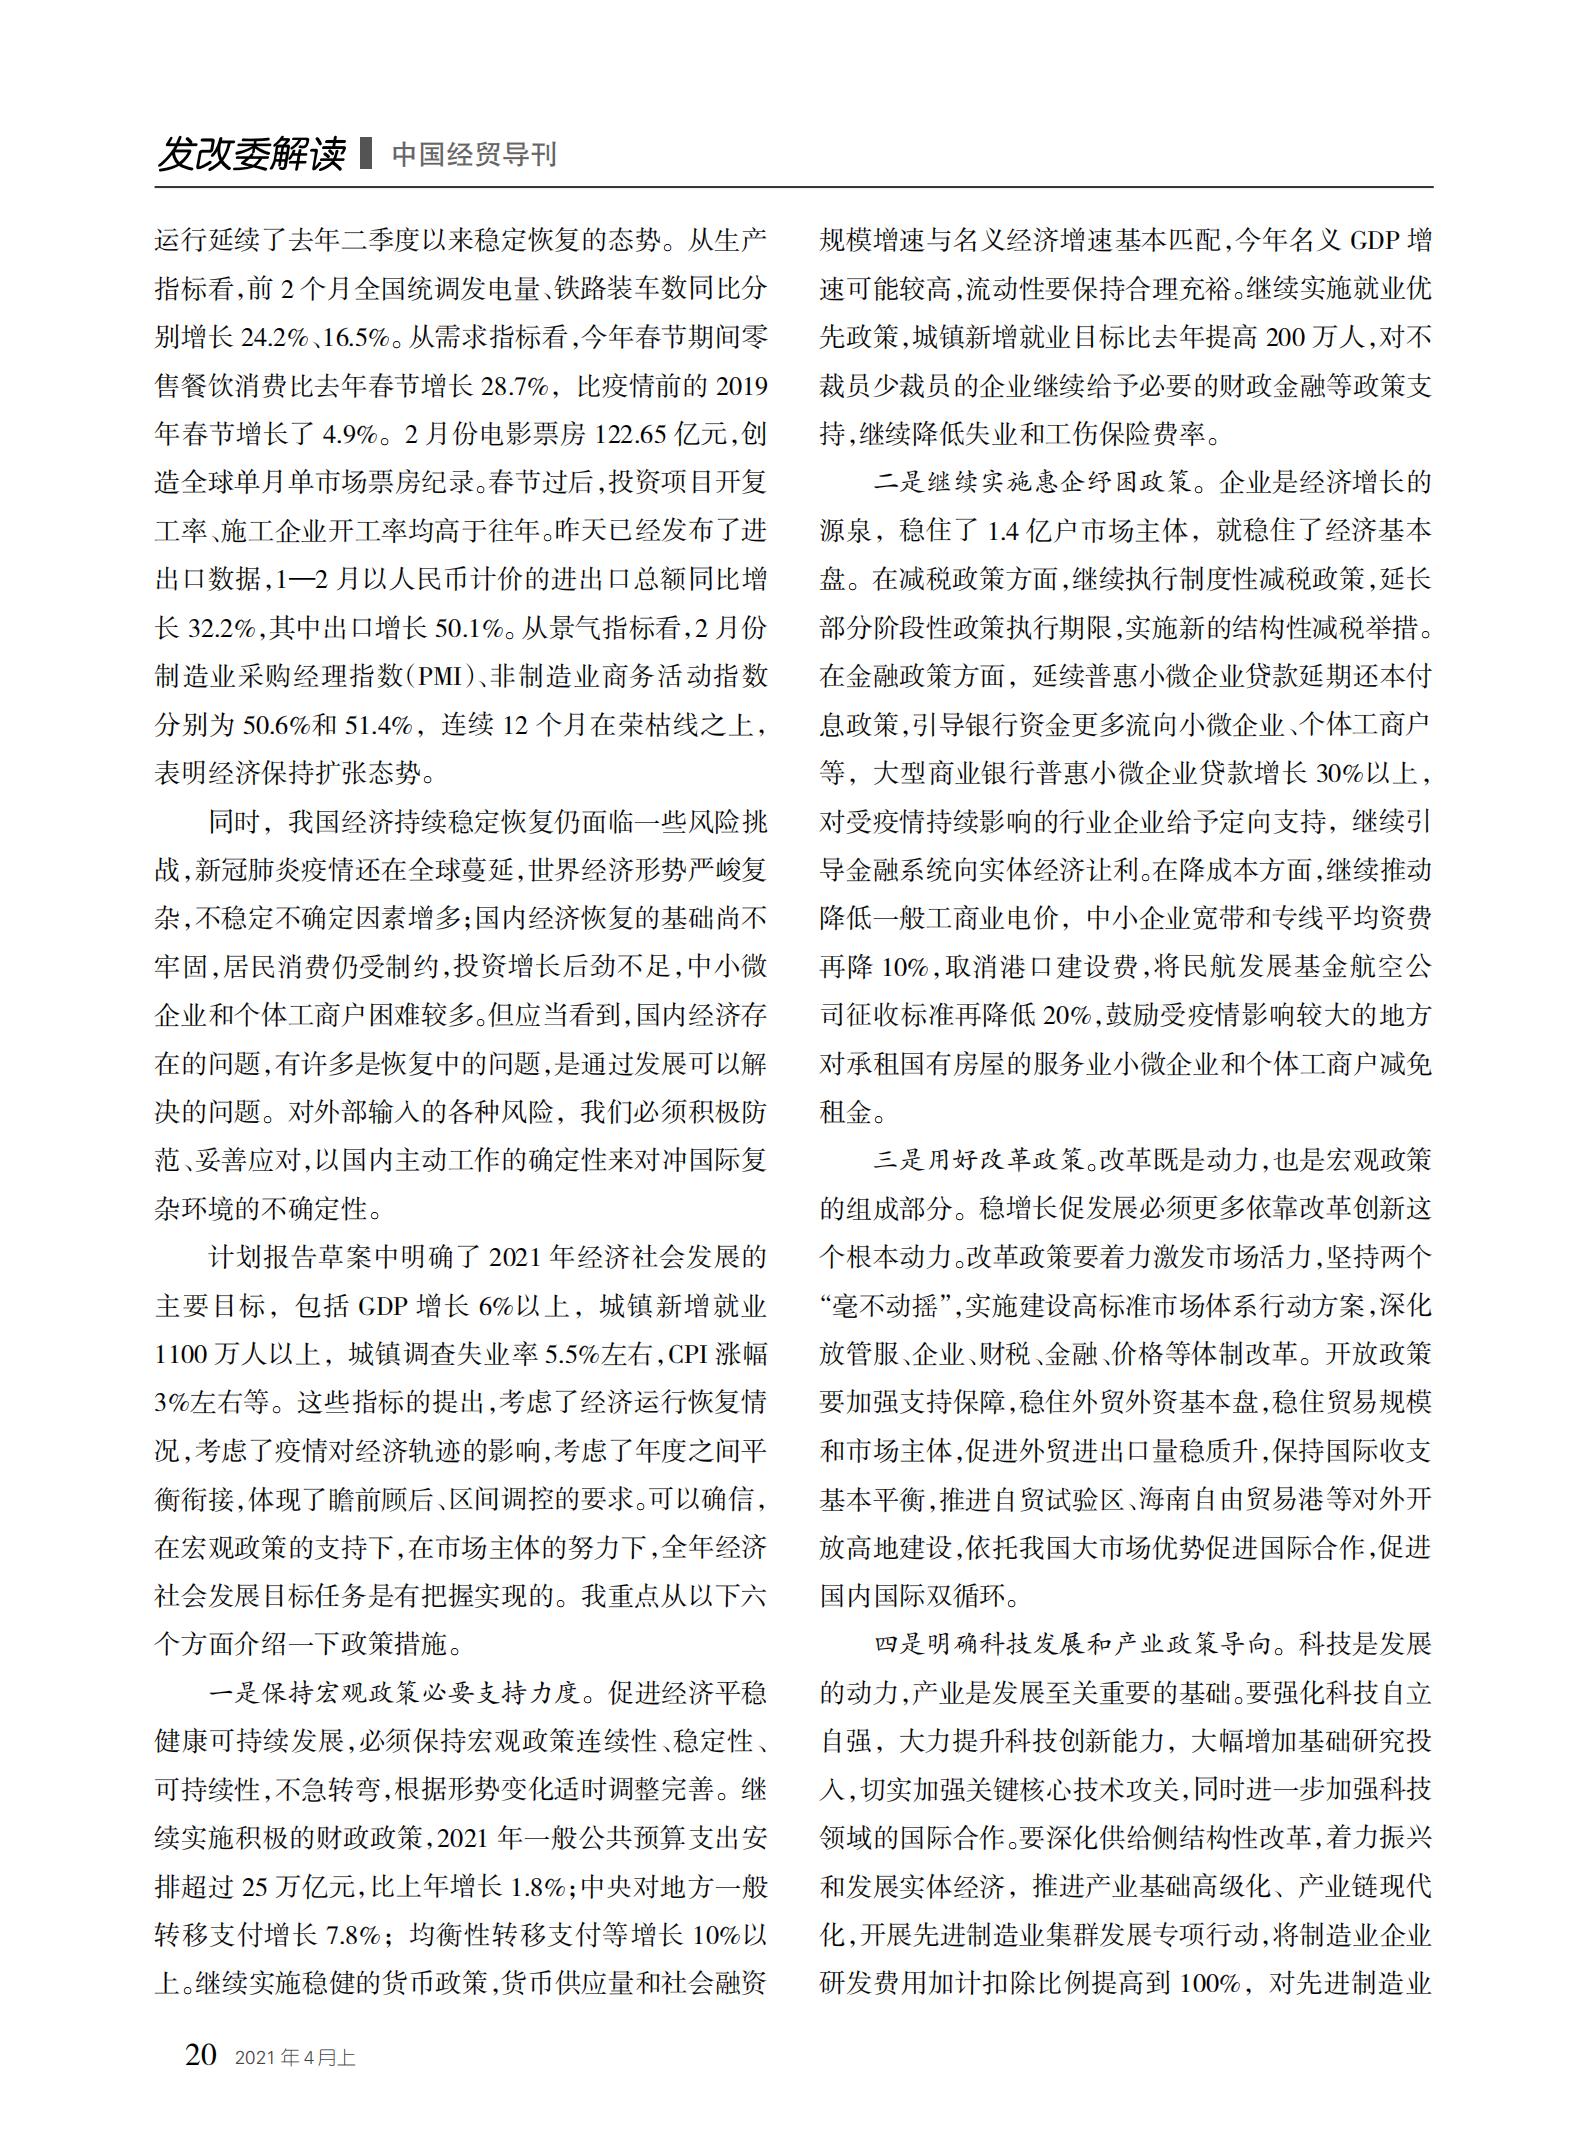 中国经贸导刊2021-4上印刷_19.jpg